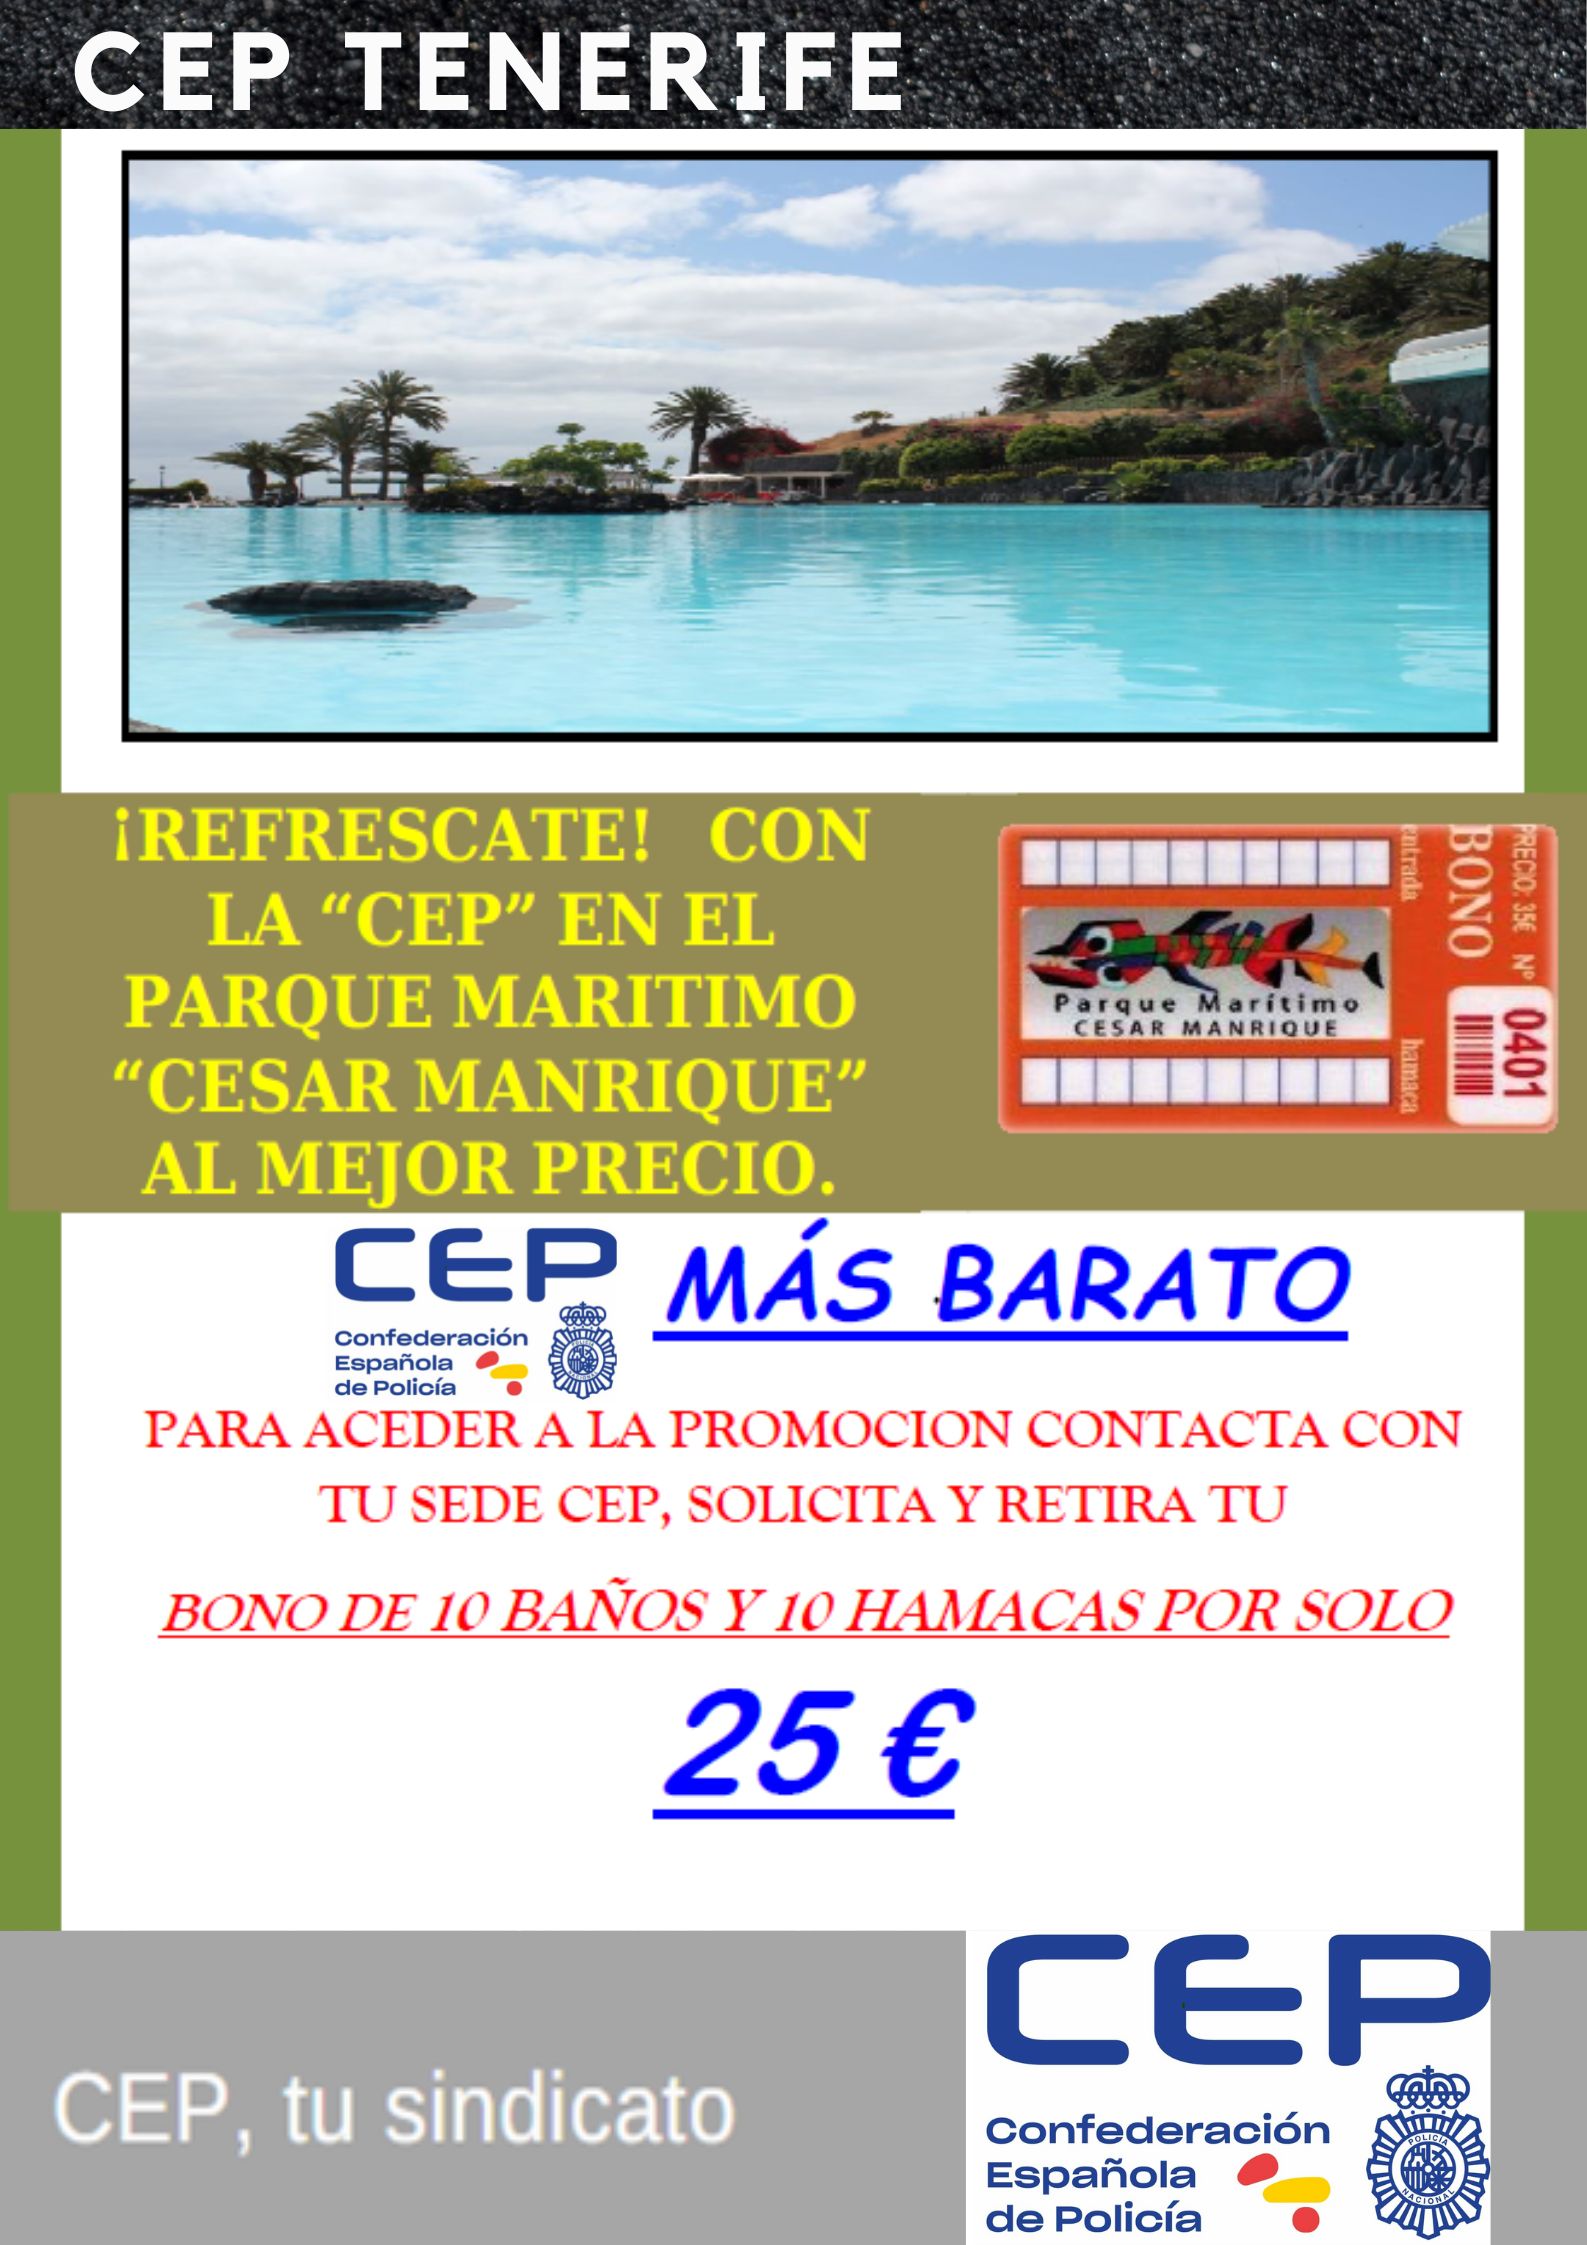 Bono Parque Marítimo - 10 entradas y 10 hamacas por 25 €